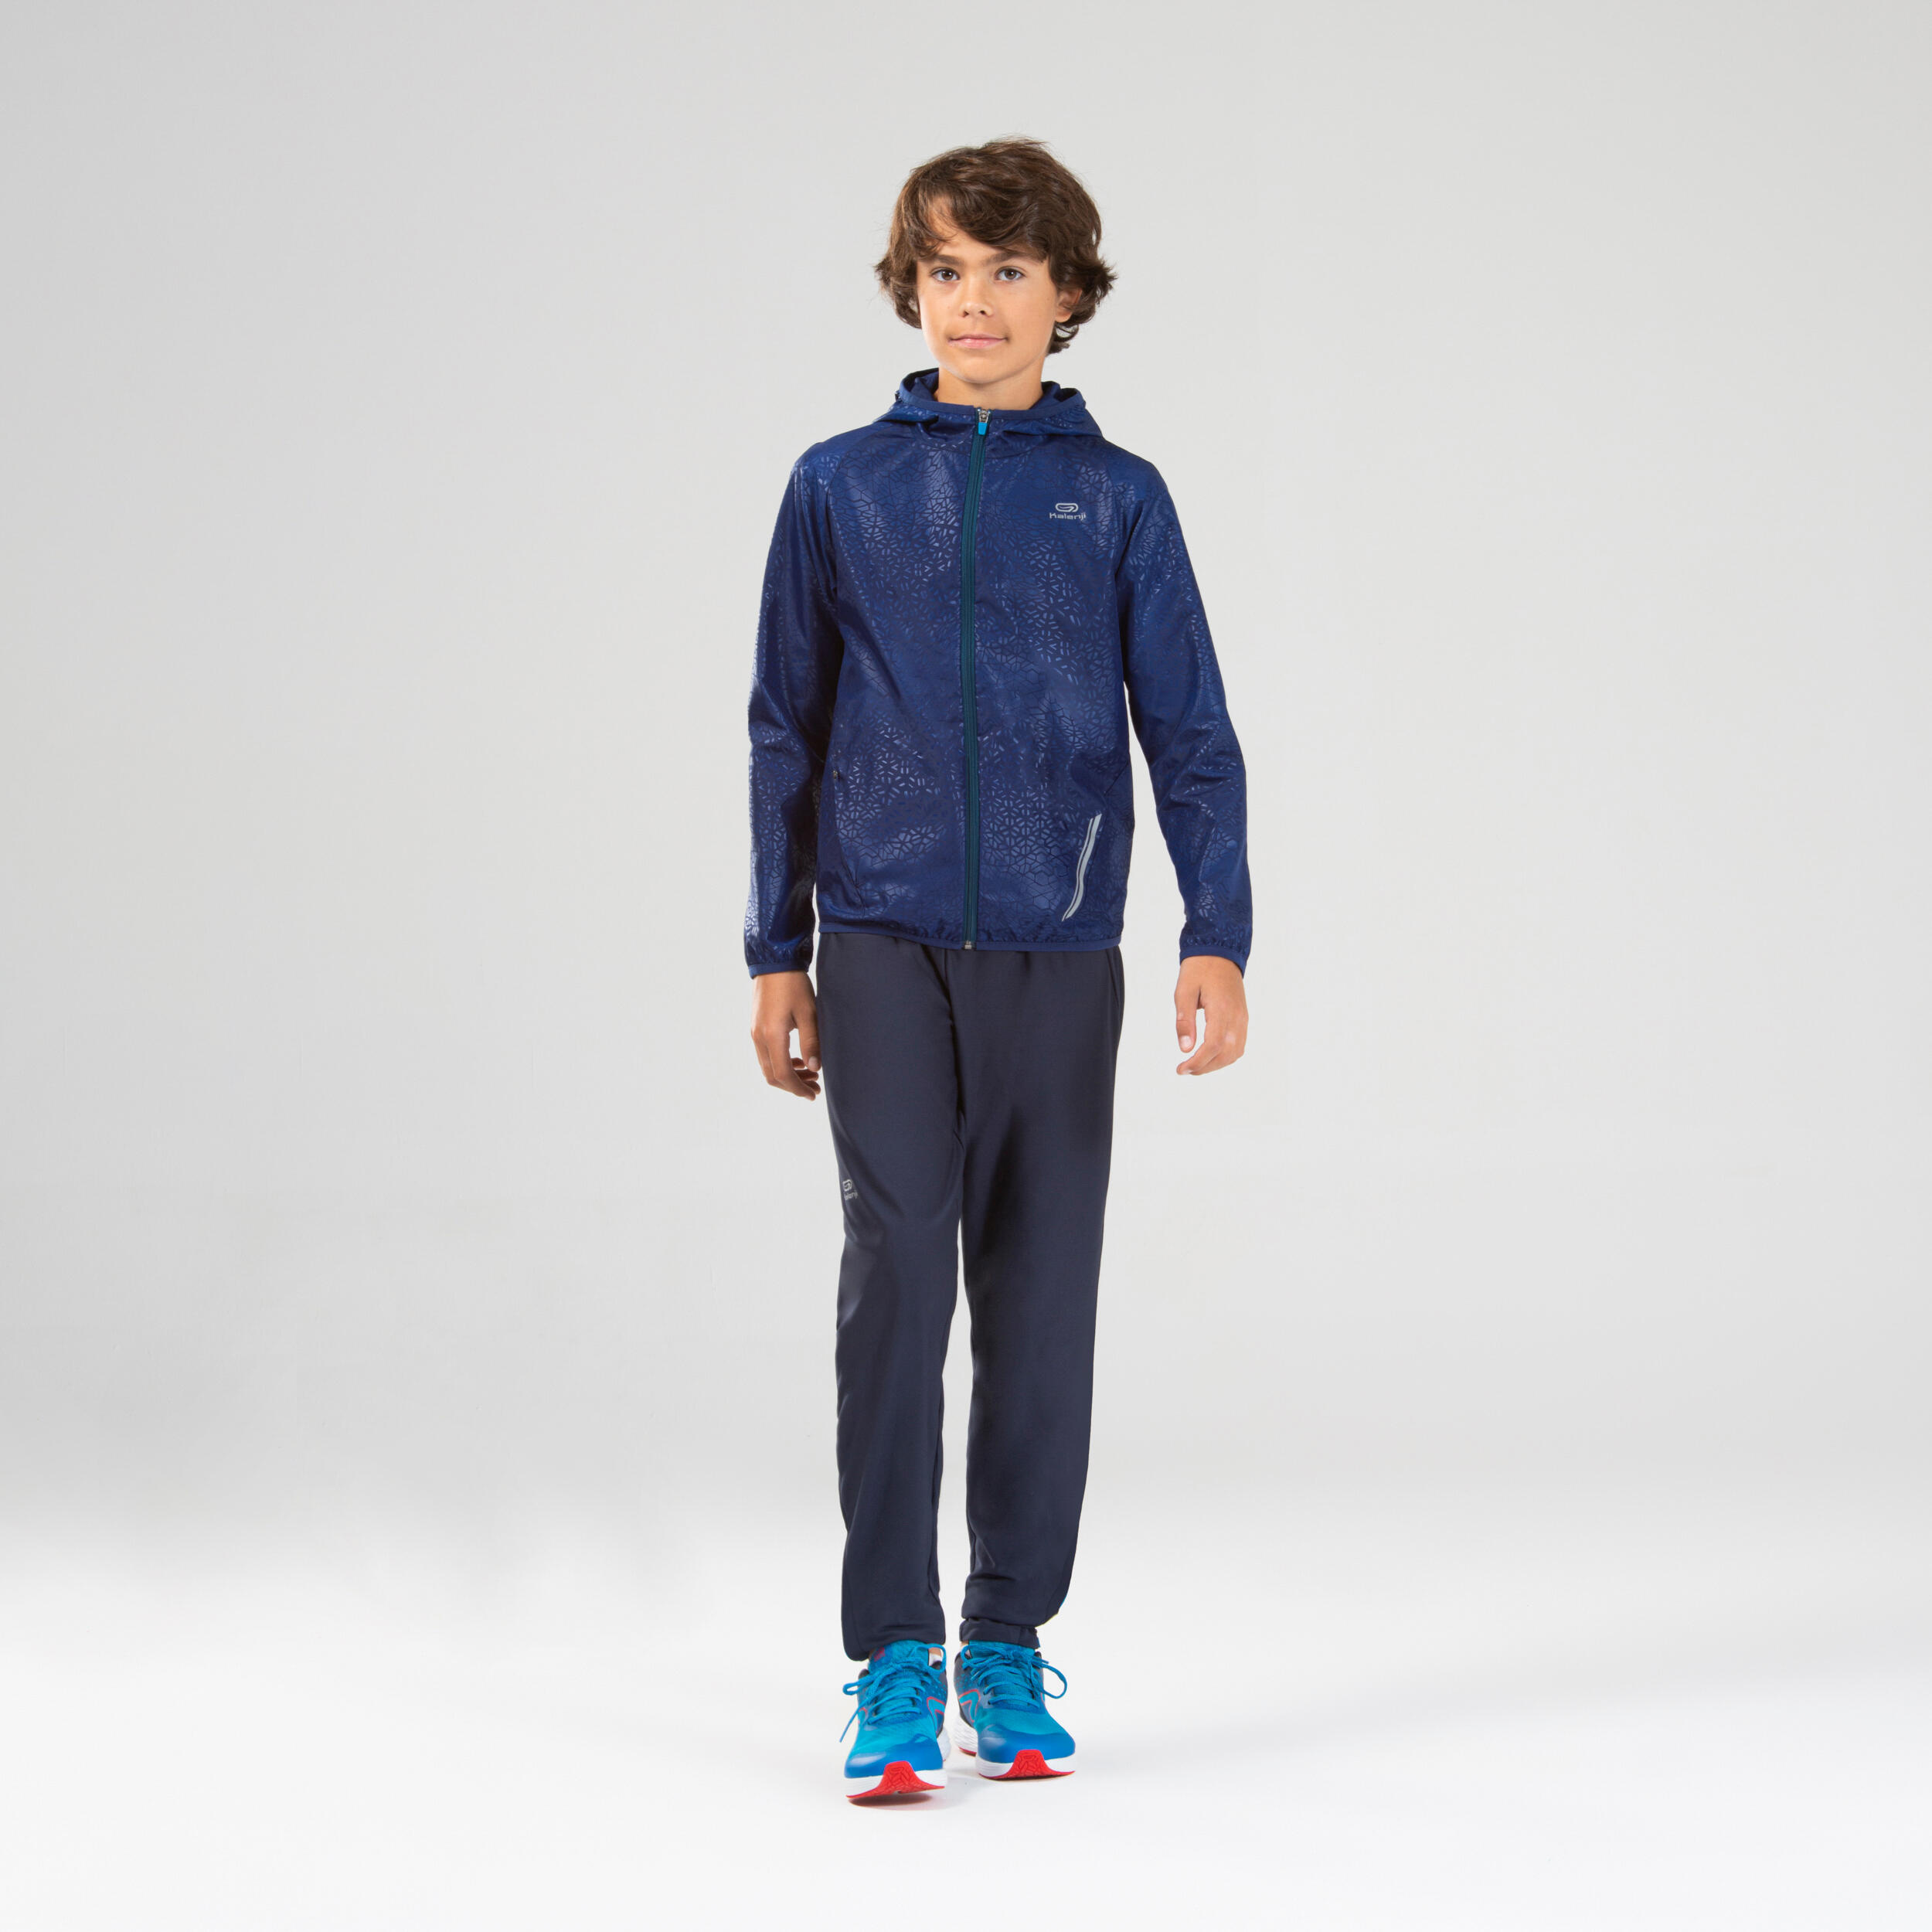 Jachetă Protecție Vânt Alergare AT100 albastru Copii